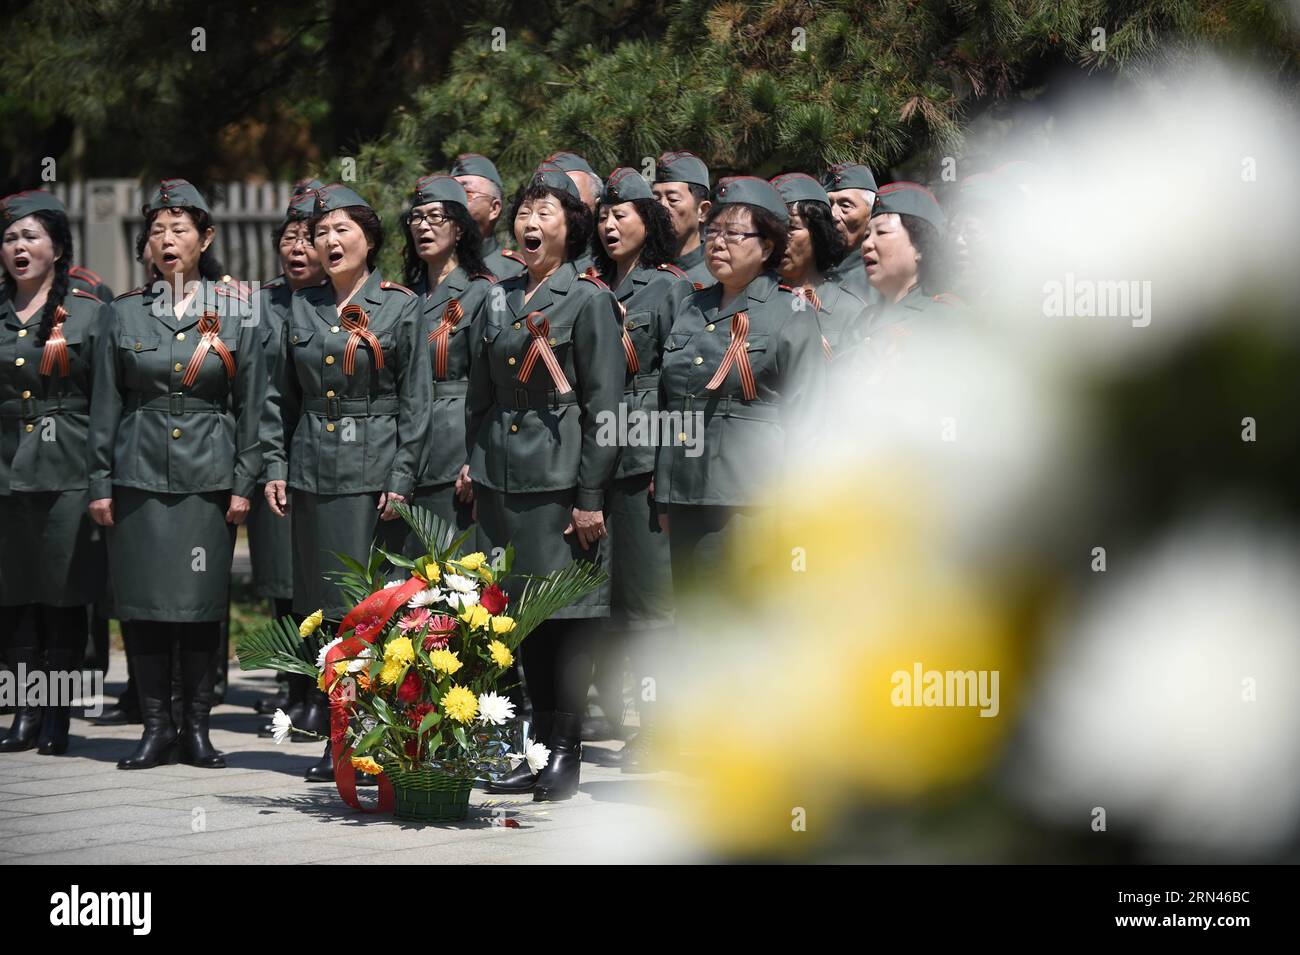 (150509) -- SHENYANG, 9 maggio 2015 -- la gente partecipa ad una cerimonia per commemorare il 70° anniversario della vittoria della guerra mondiale contro il fascismo, al Parco dei Martiri sovietici di Shenyang, capitale della provincia di Liaoning della Cina nord-orientale, 9 maggio 2015. ) (wf) CHINA-SHENYANG-VICTORY DAY-COMMEMORATION (CN) PanxYulong PUBLICATIONxNOTxINxCHN Shenyang 9 maggio 2015 celebrità prendono parte a una cerimonia per commemorare il 70 ° anniversario della vittoria del mondo anti fascista era AL Parco dei Martiri sovietici a Shenyang capitale della provincia di Liaoning della Cina nord-orientale 9 maggio 2015 WF China Shenyang vittoria Foto Stock